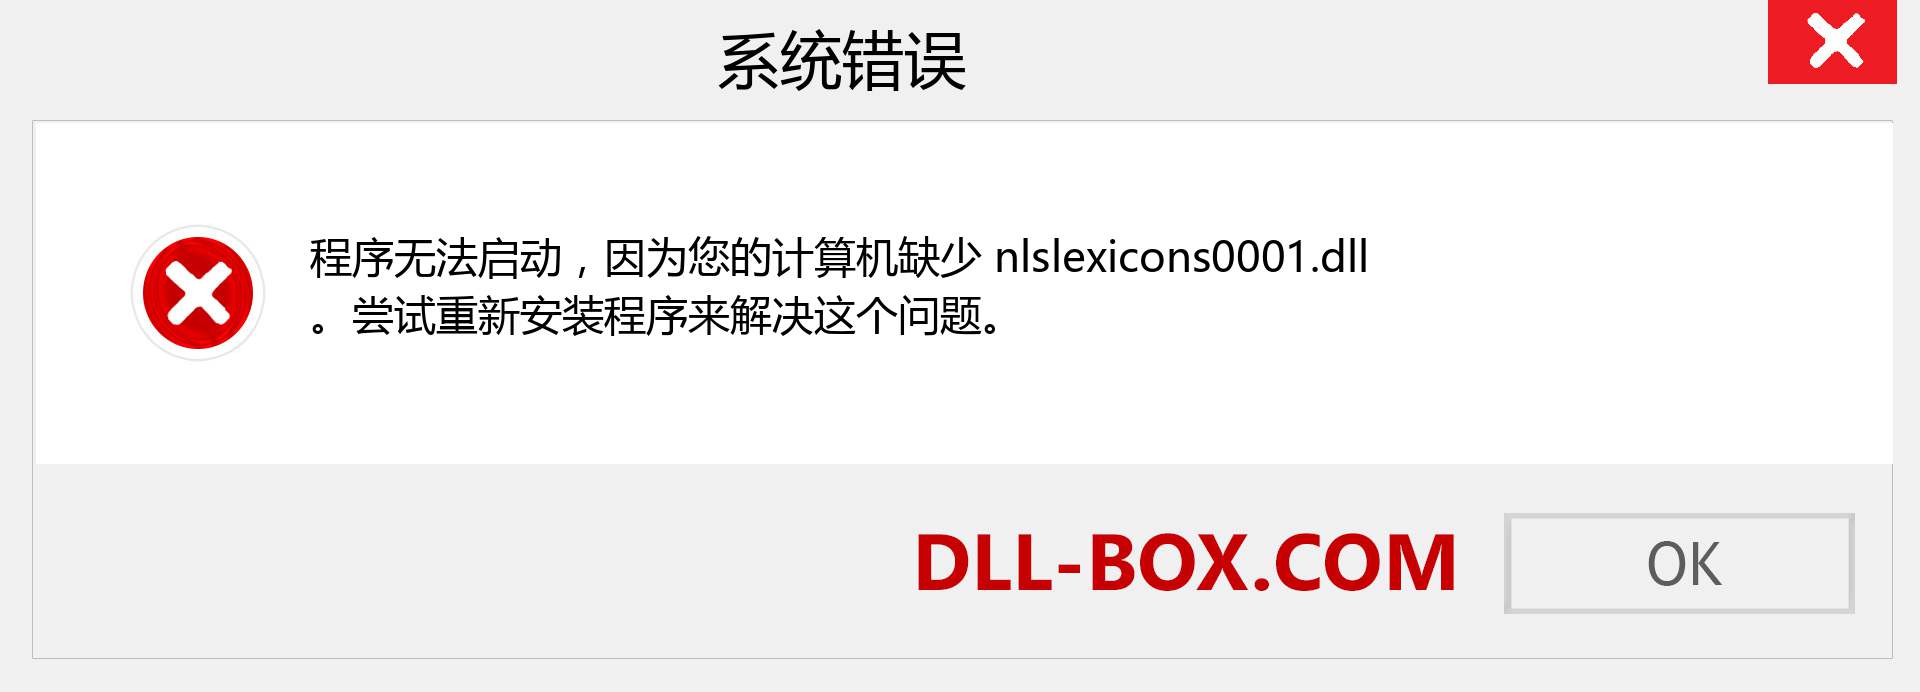 nlslexicons0001.dll 文件丢失？。 适用于 Windows 7、8、10 的下载 - 修复 Windows、照片、图像上的 nlslexicons0001 dll 丢失错误